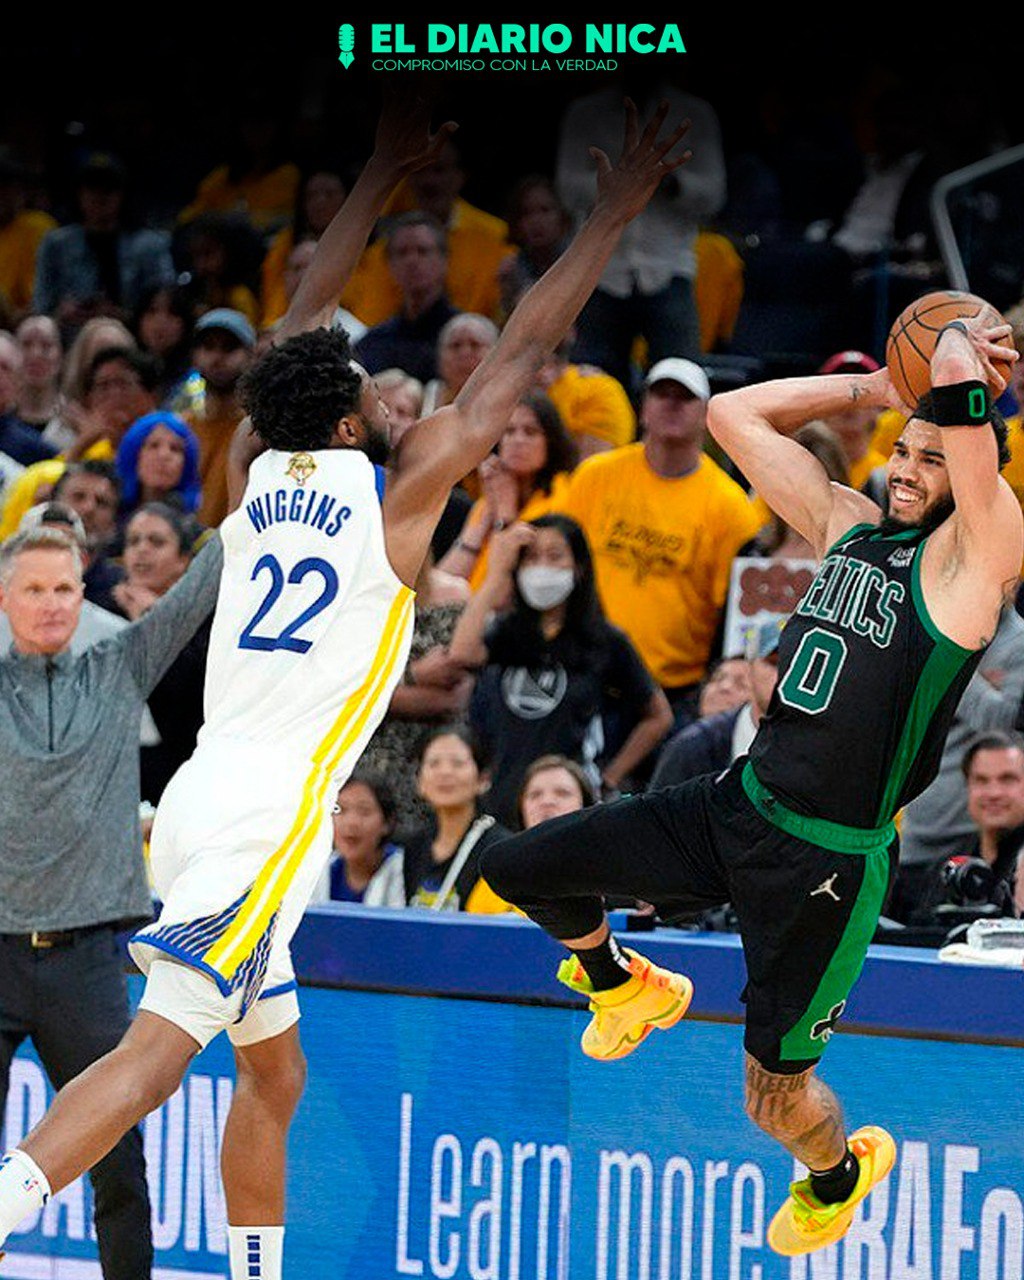 Warriors vs Celtics